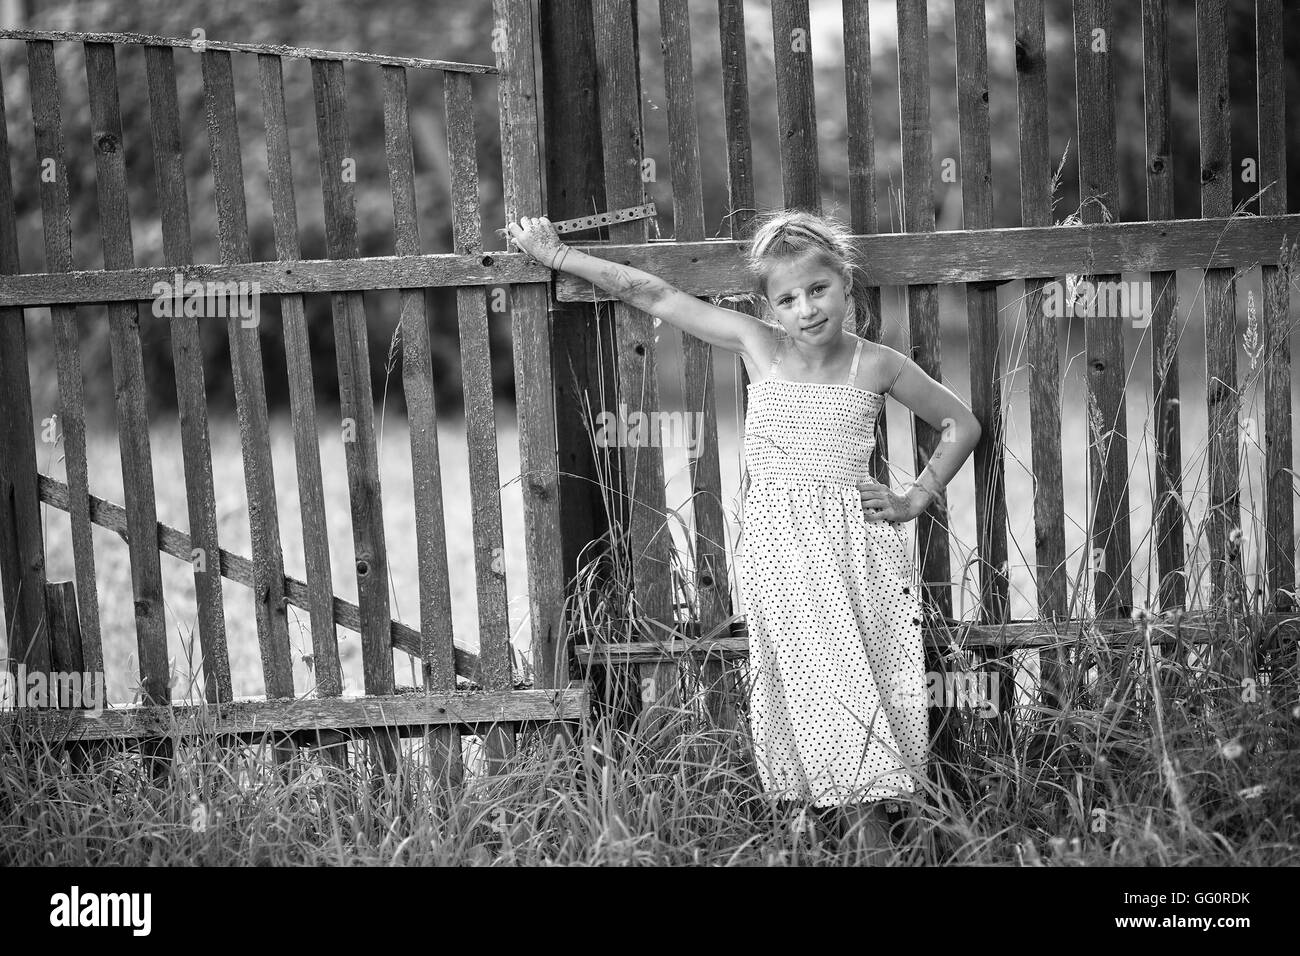 Niedliche kleine Mädchen steht in der Nähe einen Zaun im Dorf. Schwarz / weiß Foto. Stockfoto